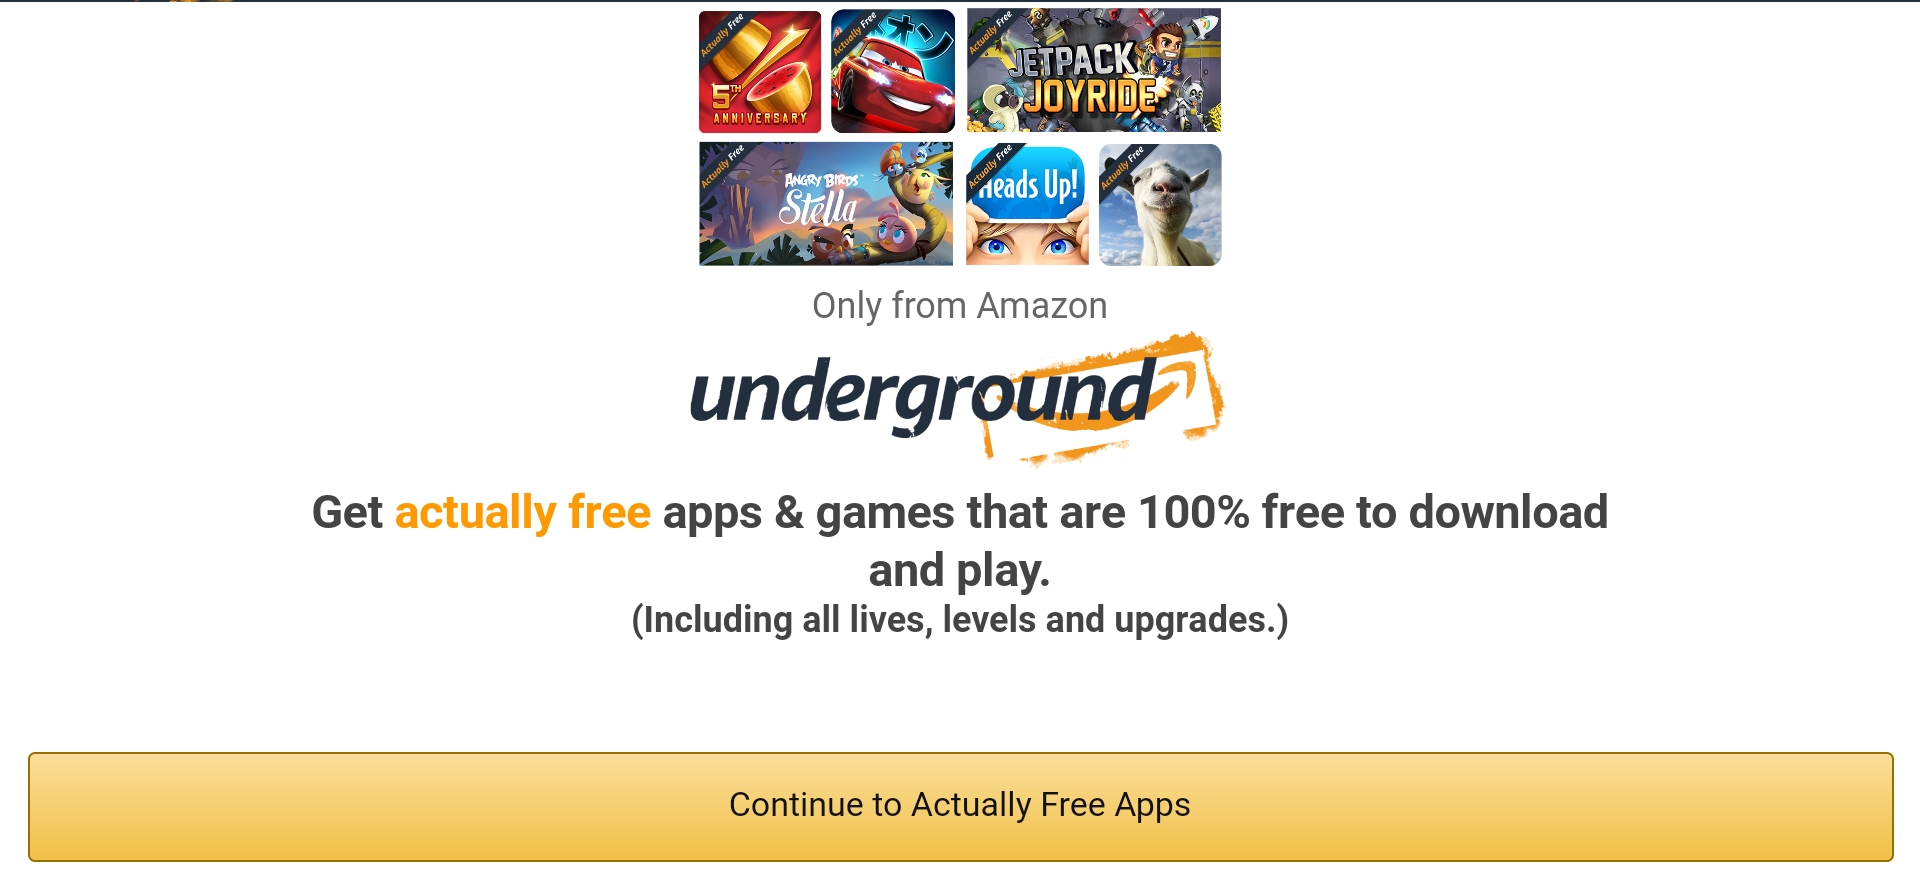 Amazon Underground Actually Free Program Shut Down by Amazon